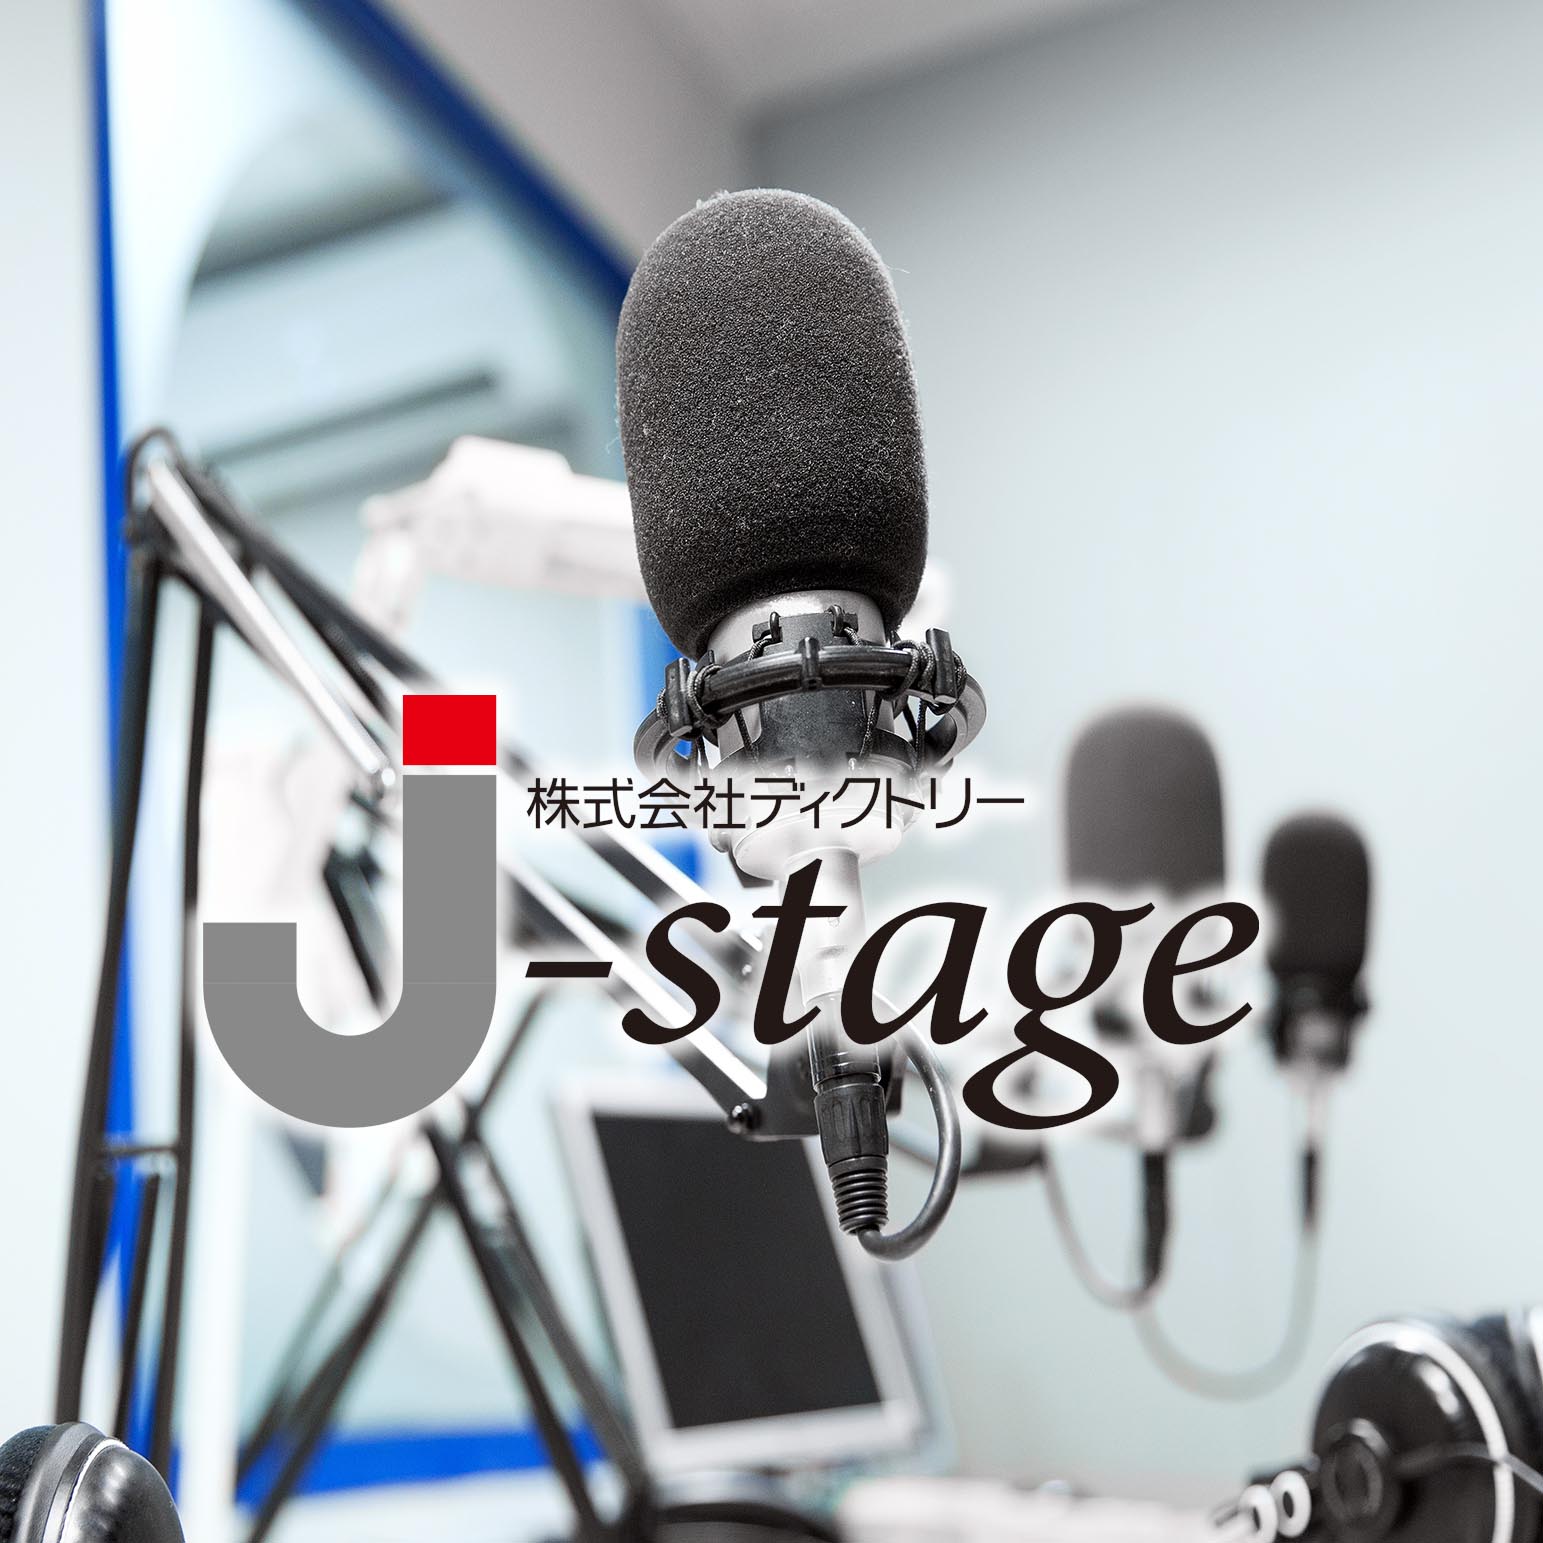 株式会社ディクトリー j-stage